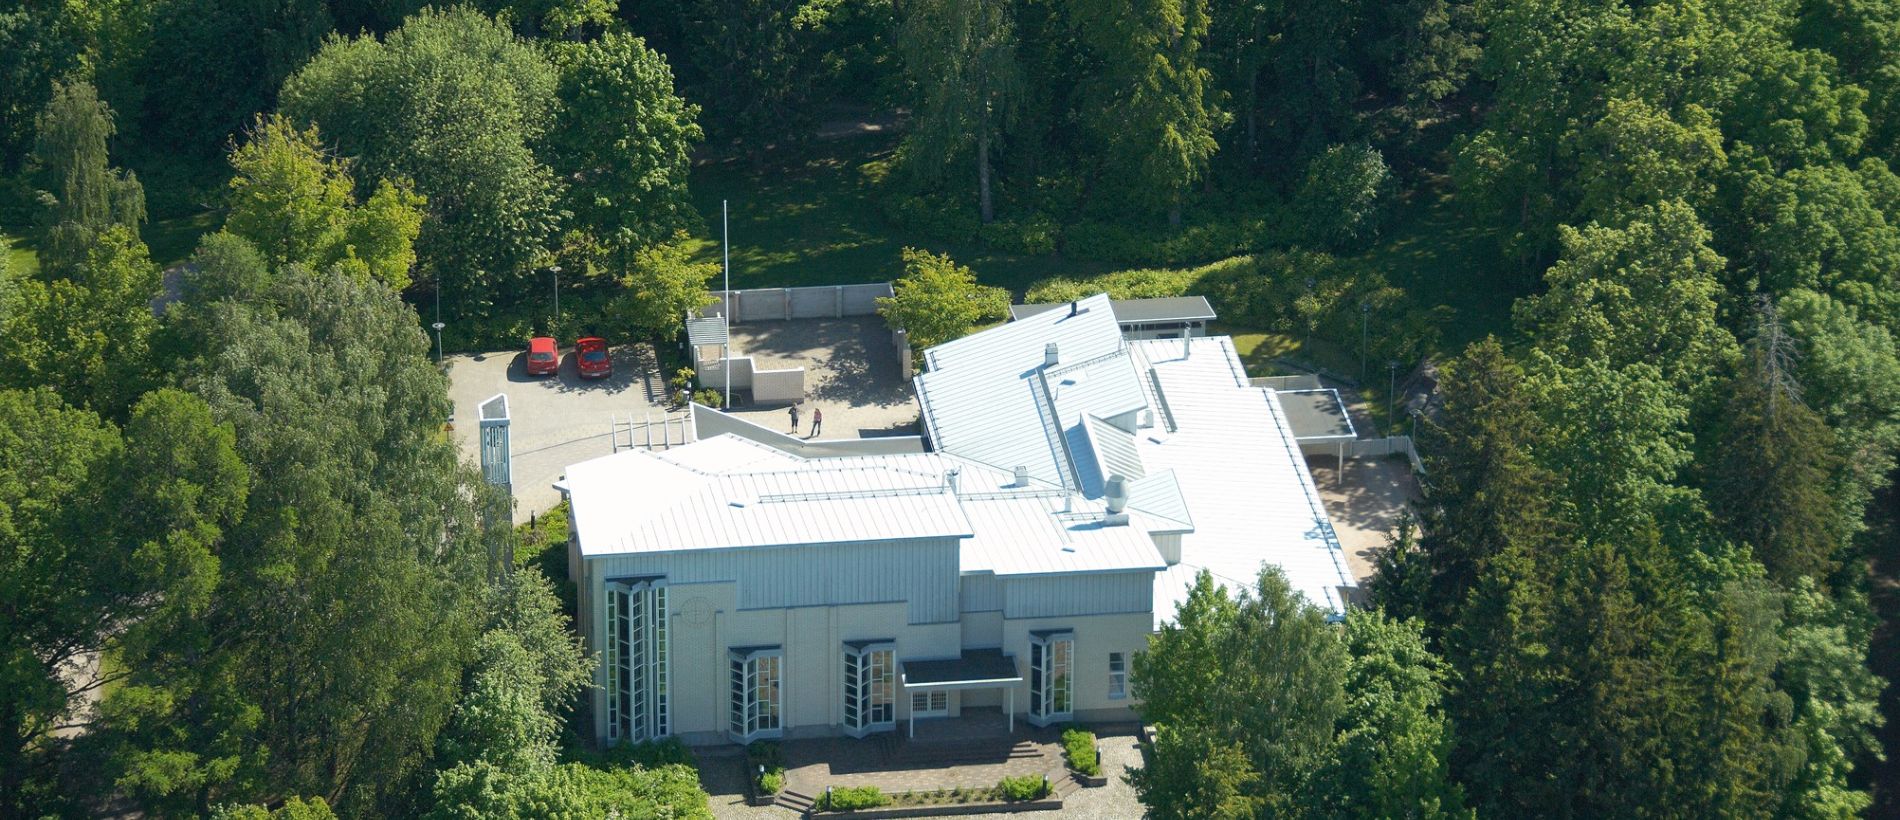 Gammelbackan seurakuntakeskus ilmasta kuvattuna.